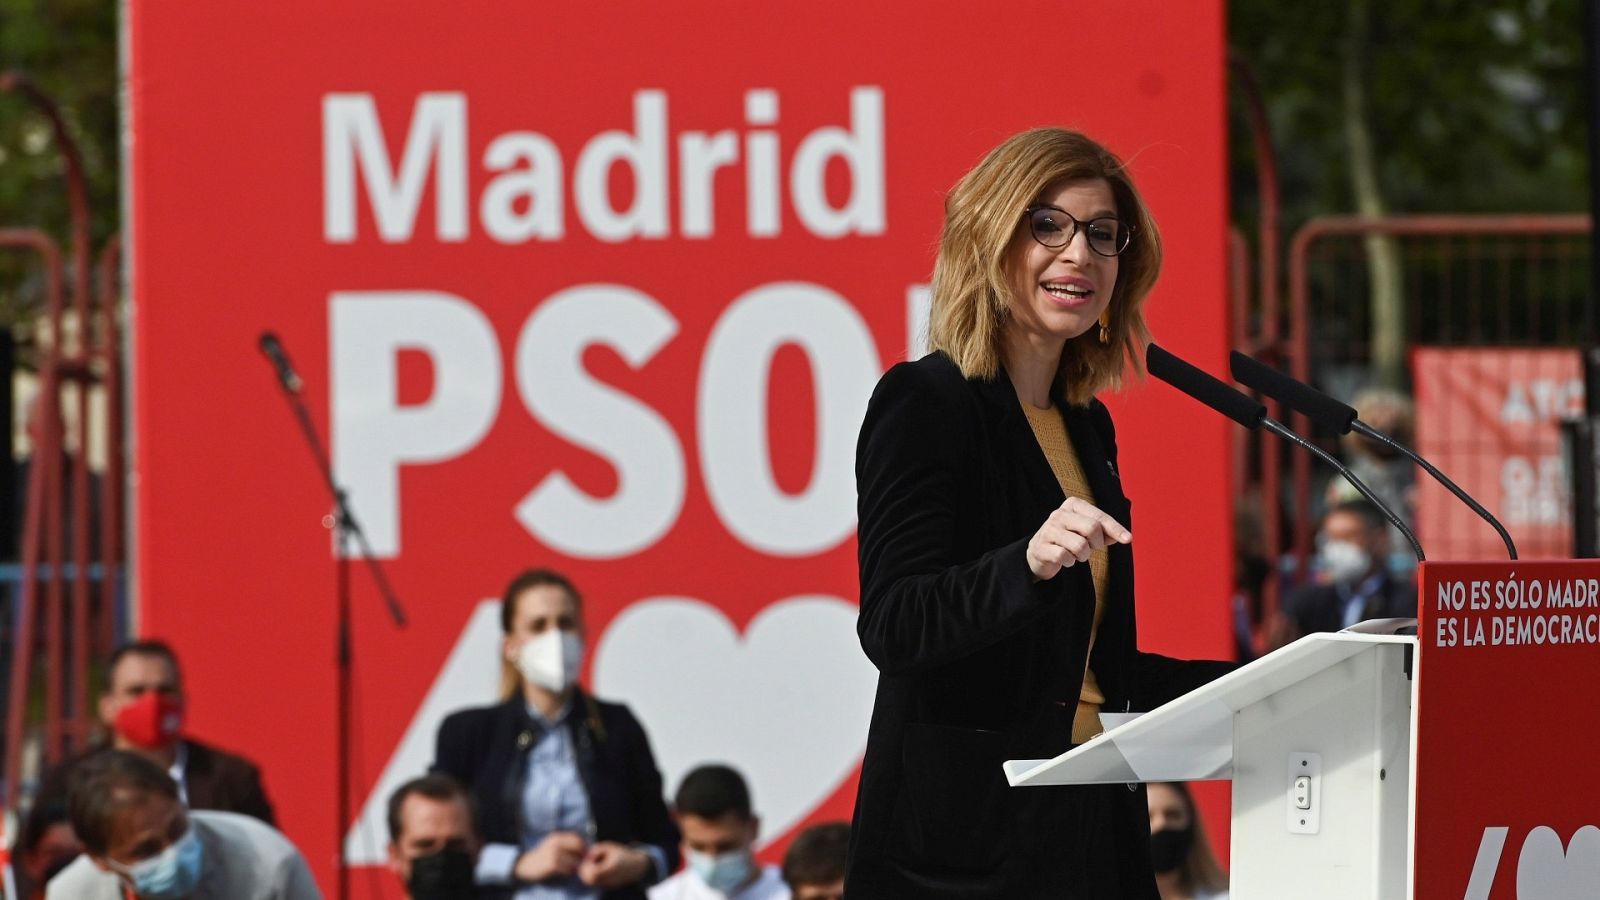 La número dos en la lista del PSOE, Hana Jalloul, nombrada portavoz en la Asamblea